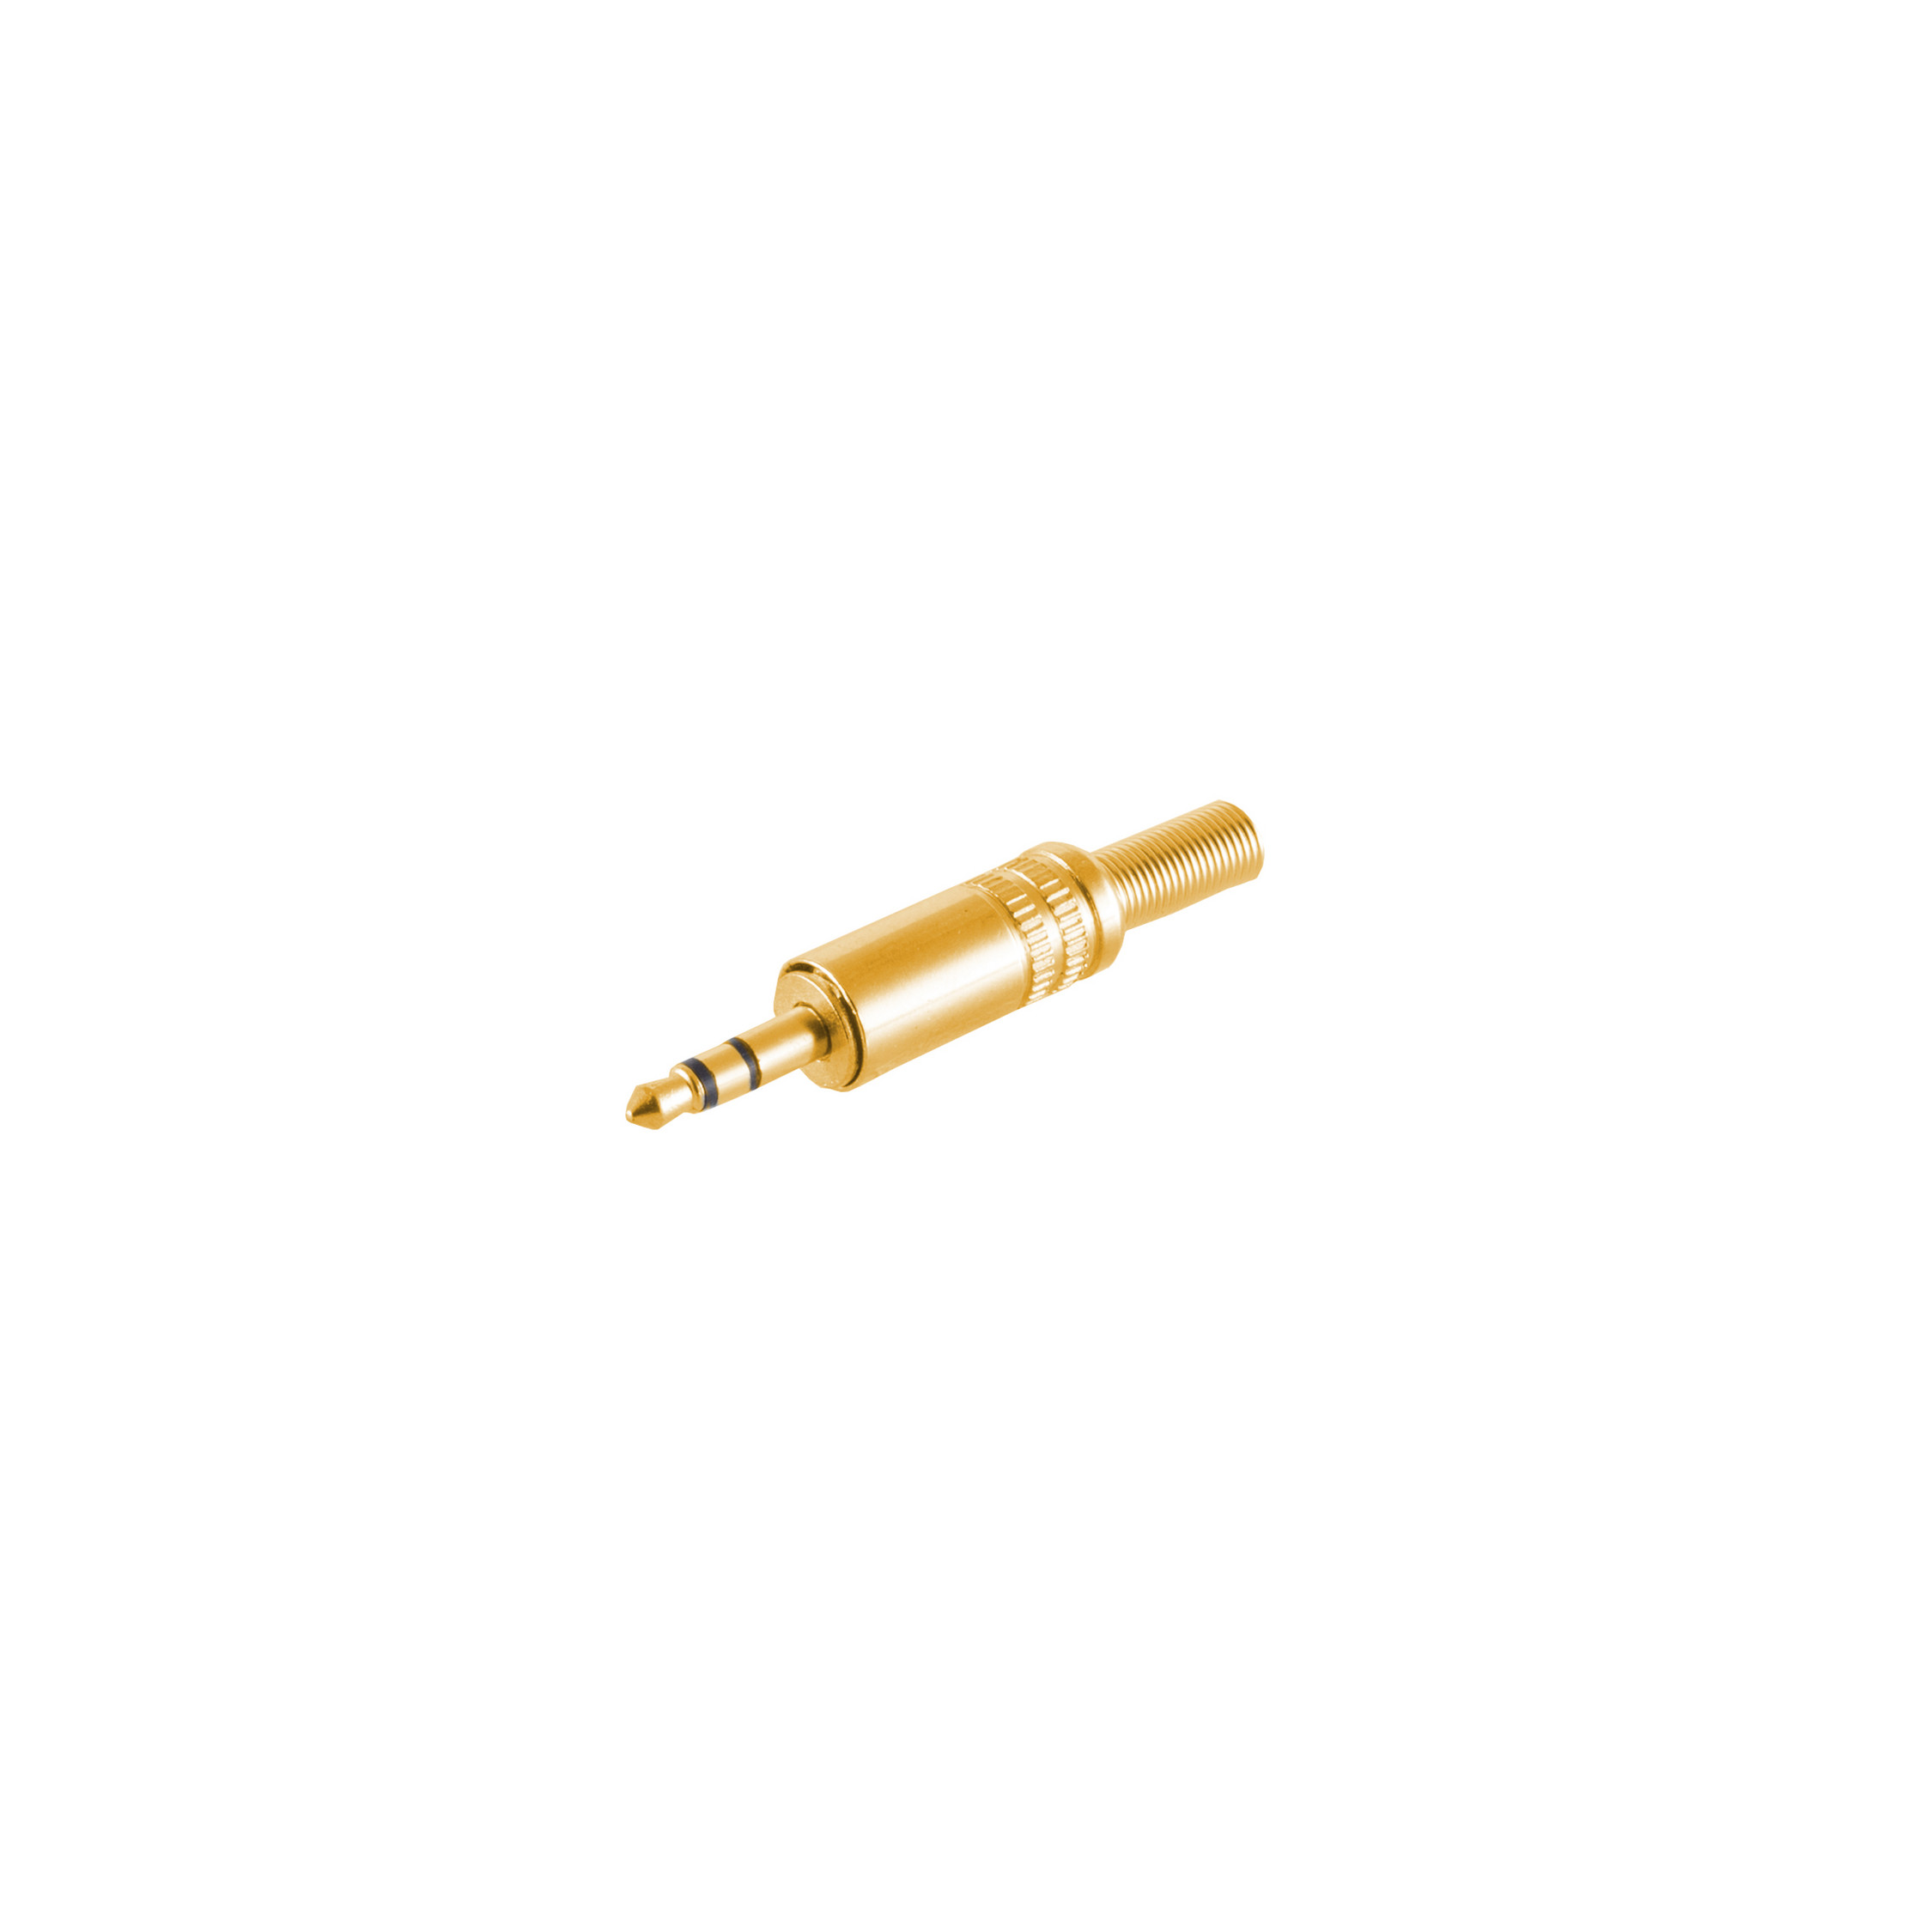 MAXIMUM S/CONN vergoldet Klinke Stereo 3,5mm, Klinkenstecker CONNECTIVITY Metall